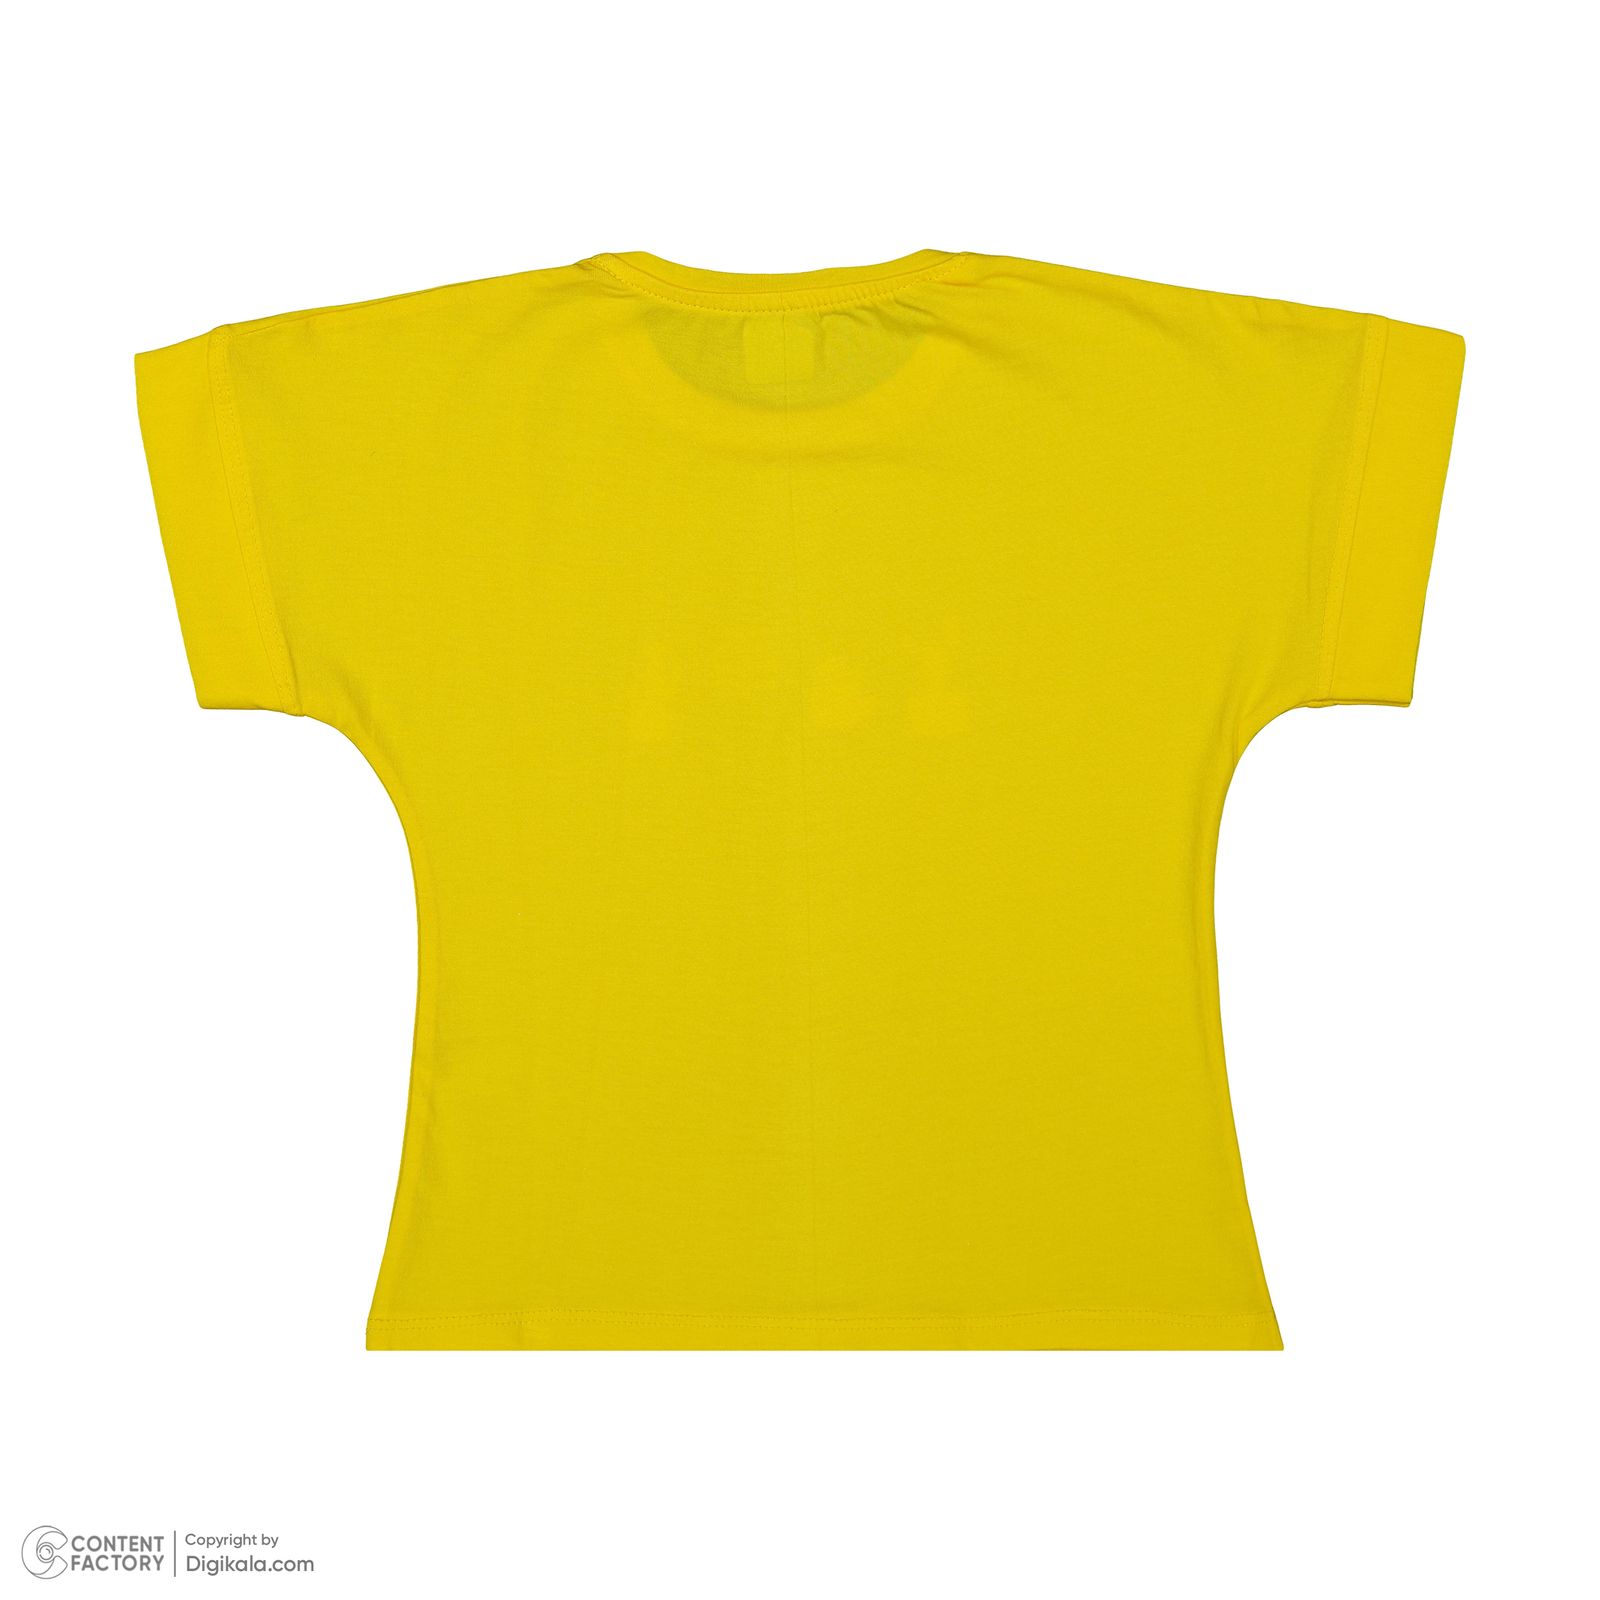 ست تی شرت آستین کوتاه و شلوارک دخترانه مادر مدل گاردن کد 92-16 رنگ زرد -  - 5